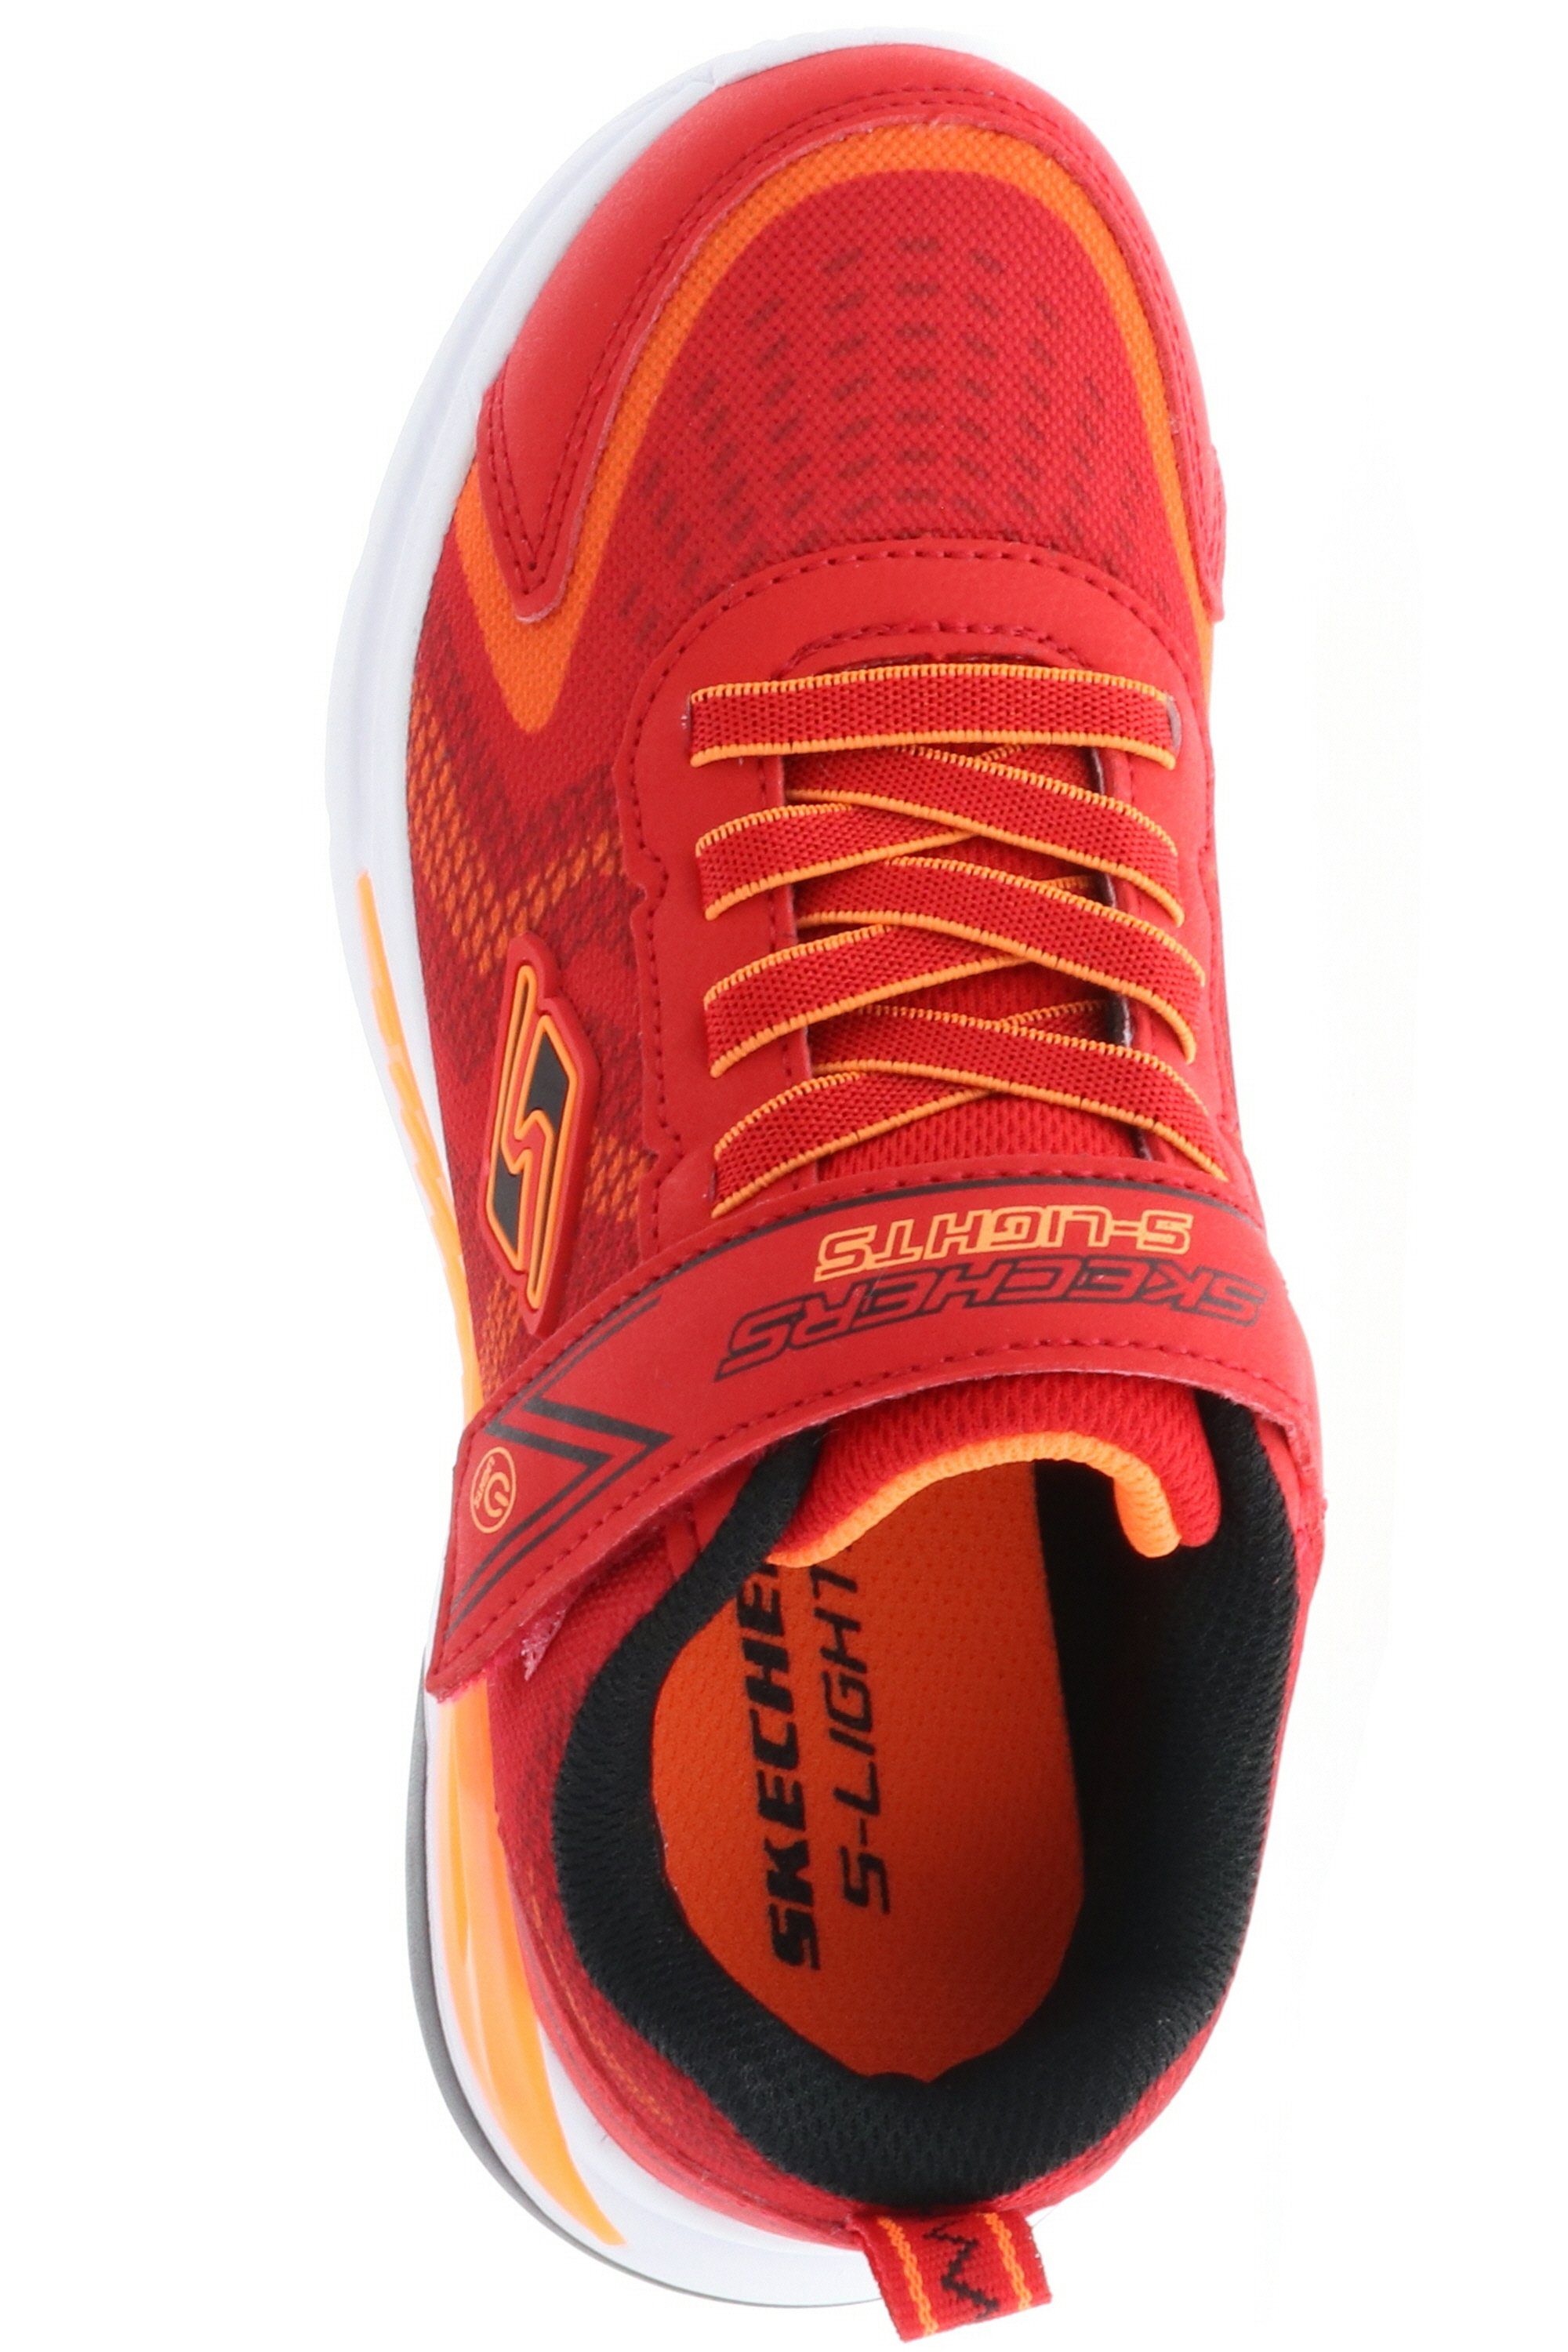 Klettriemen Red/Orange 401660L/RDOR ausgeschalten an- Skechers / Lichter Lights-Tri-Namics S Sneaker können und Orange am werden Schwarz / Rot